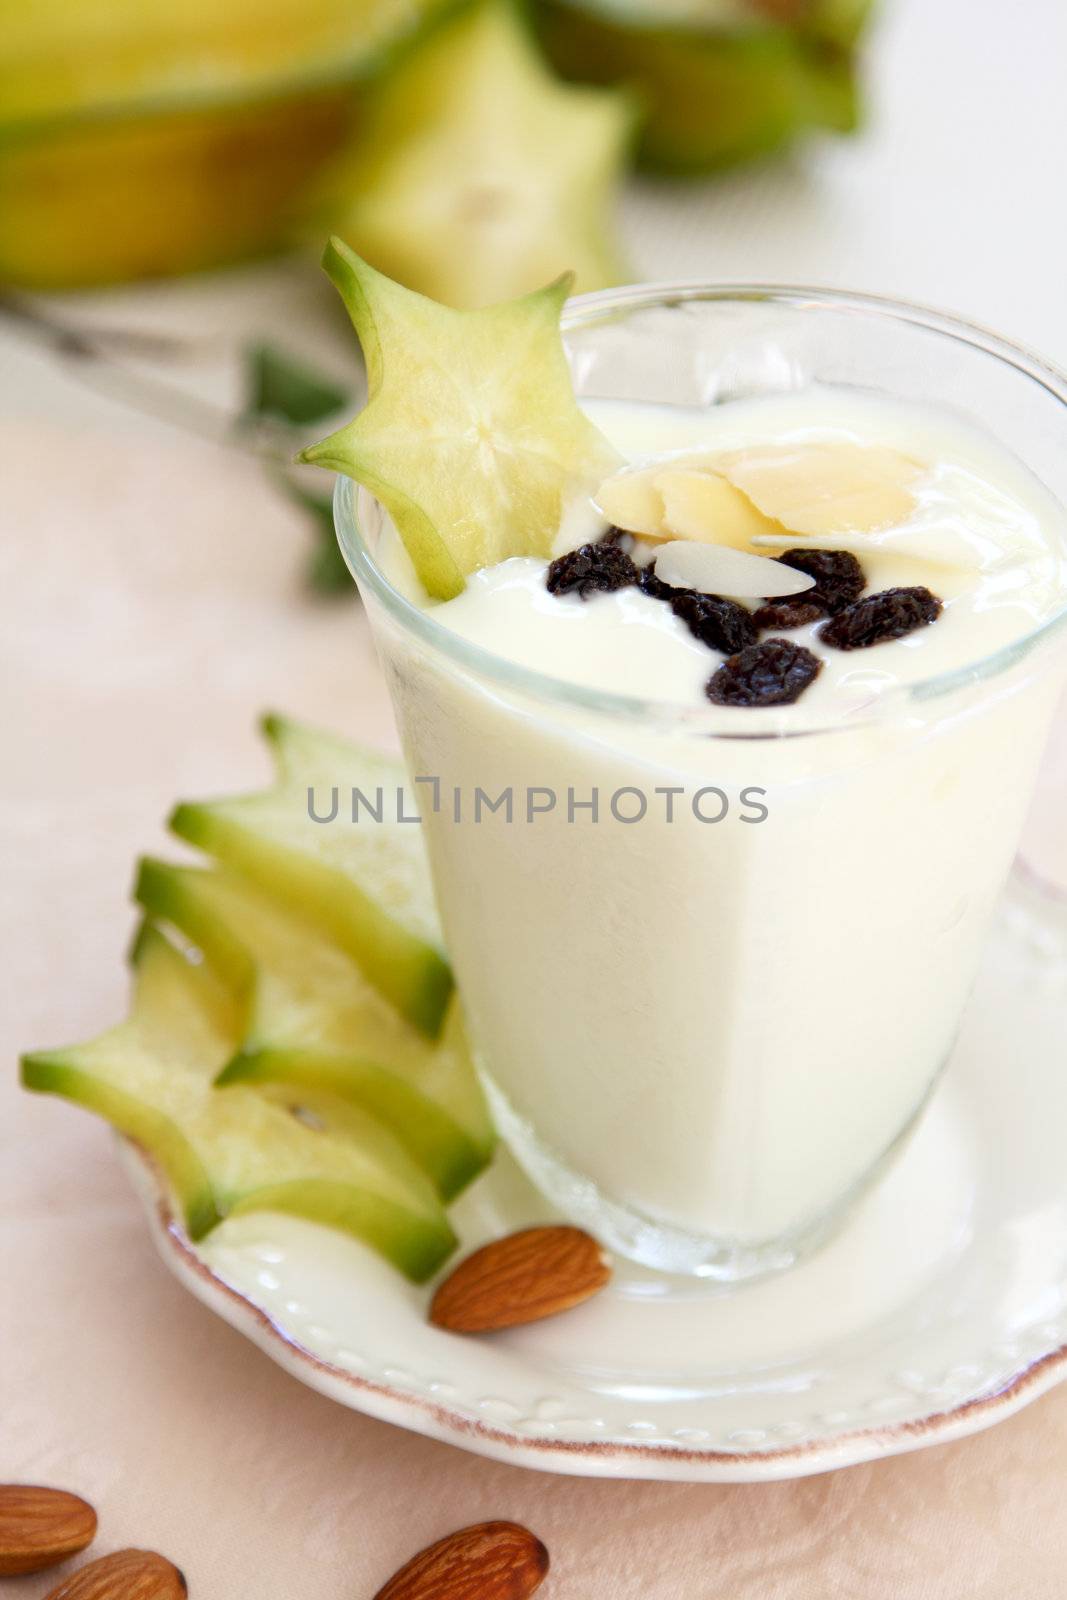 Yogurt with starfruit,almond and raisin in glass